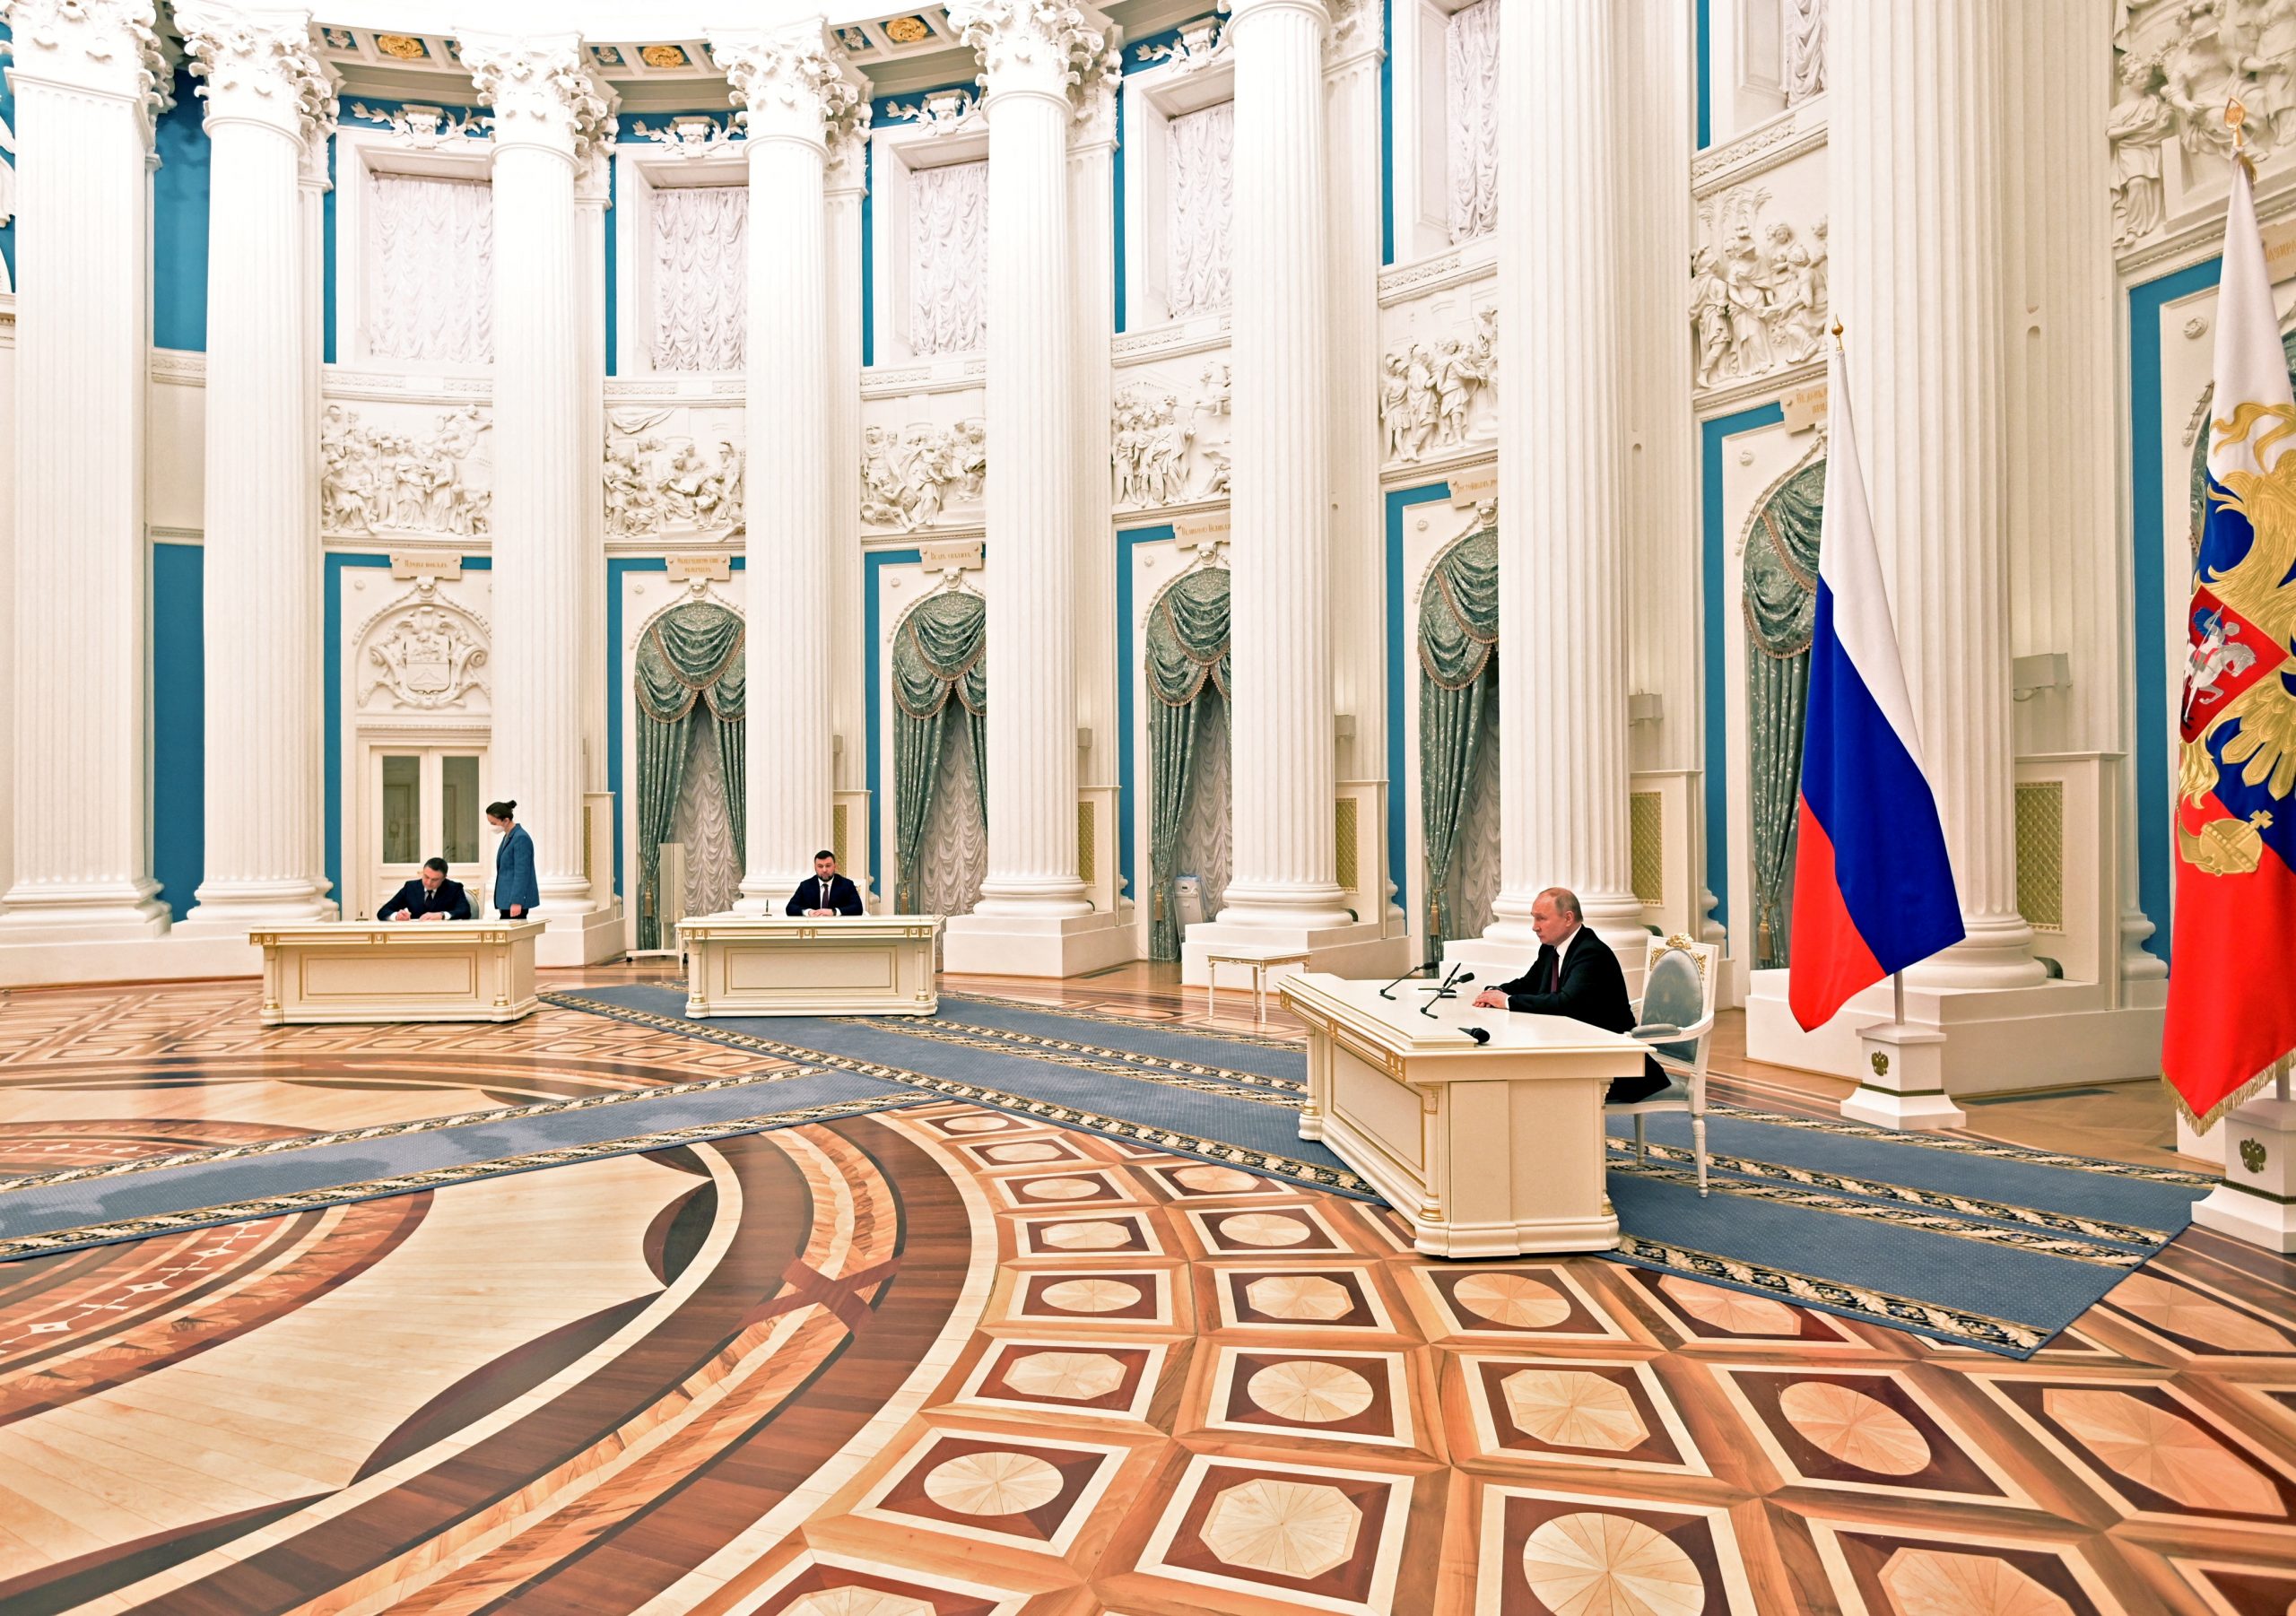 Vladimir Putin, potpisivanje, dekret, nezavisnost, Donjeck, Lugansk